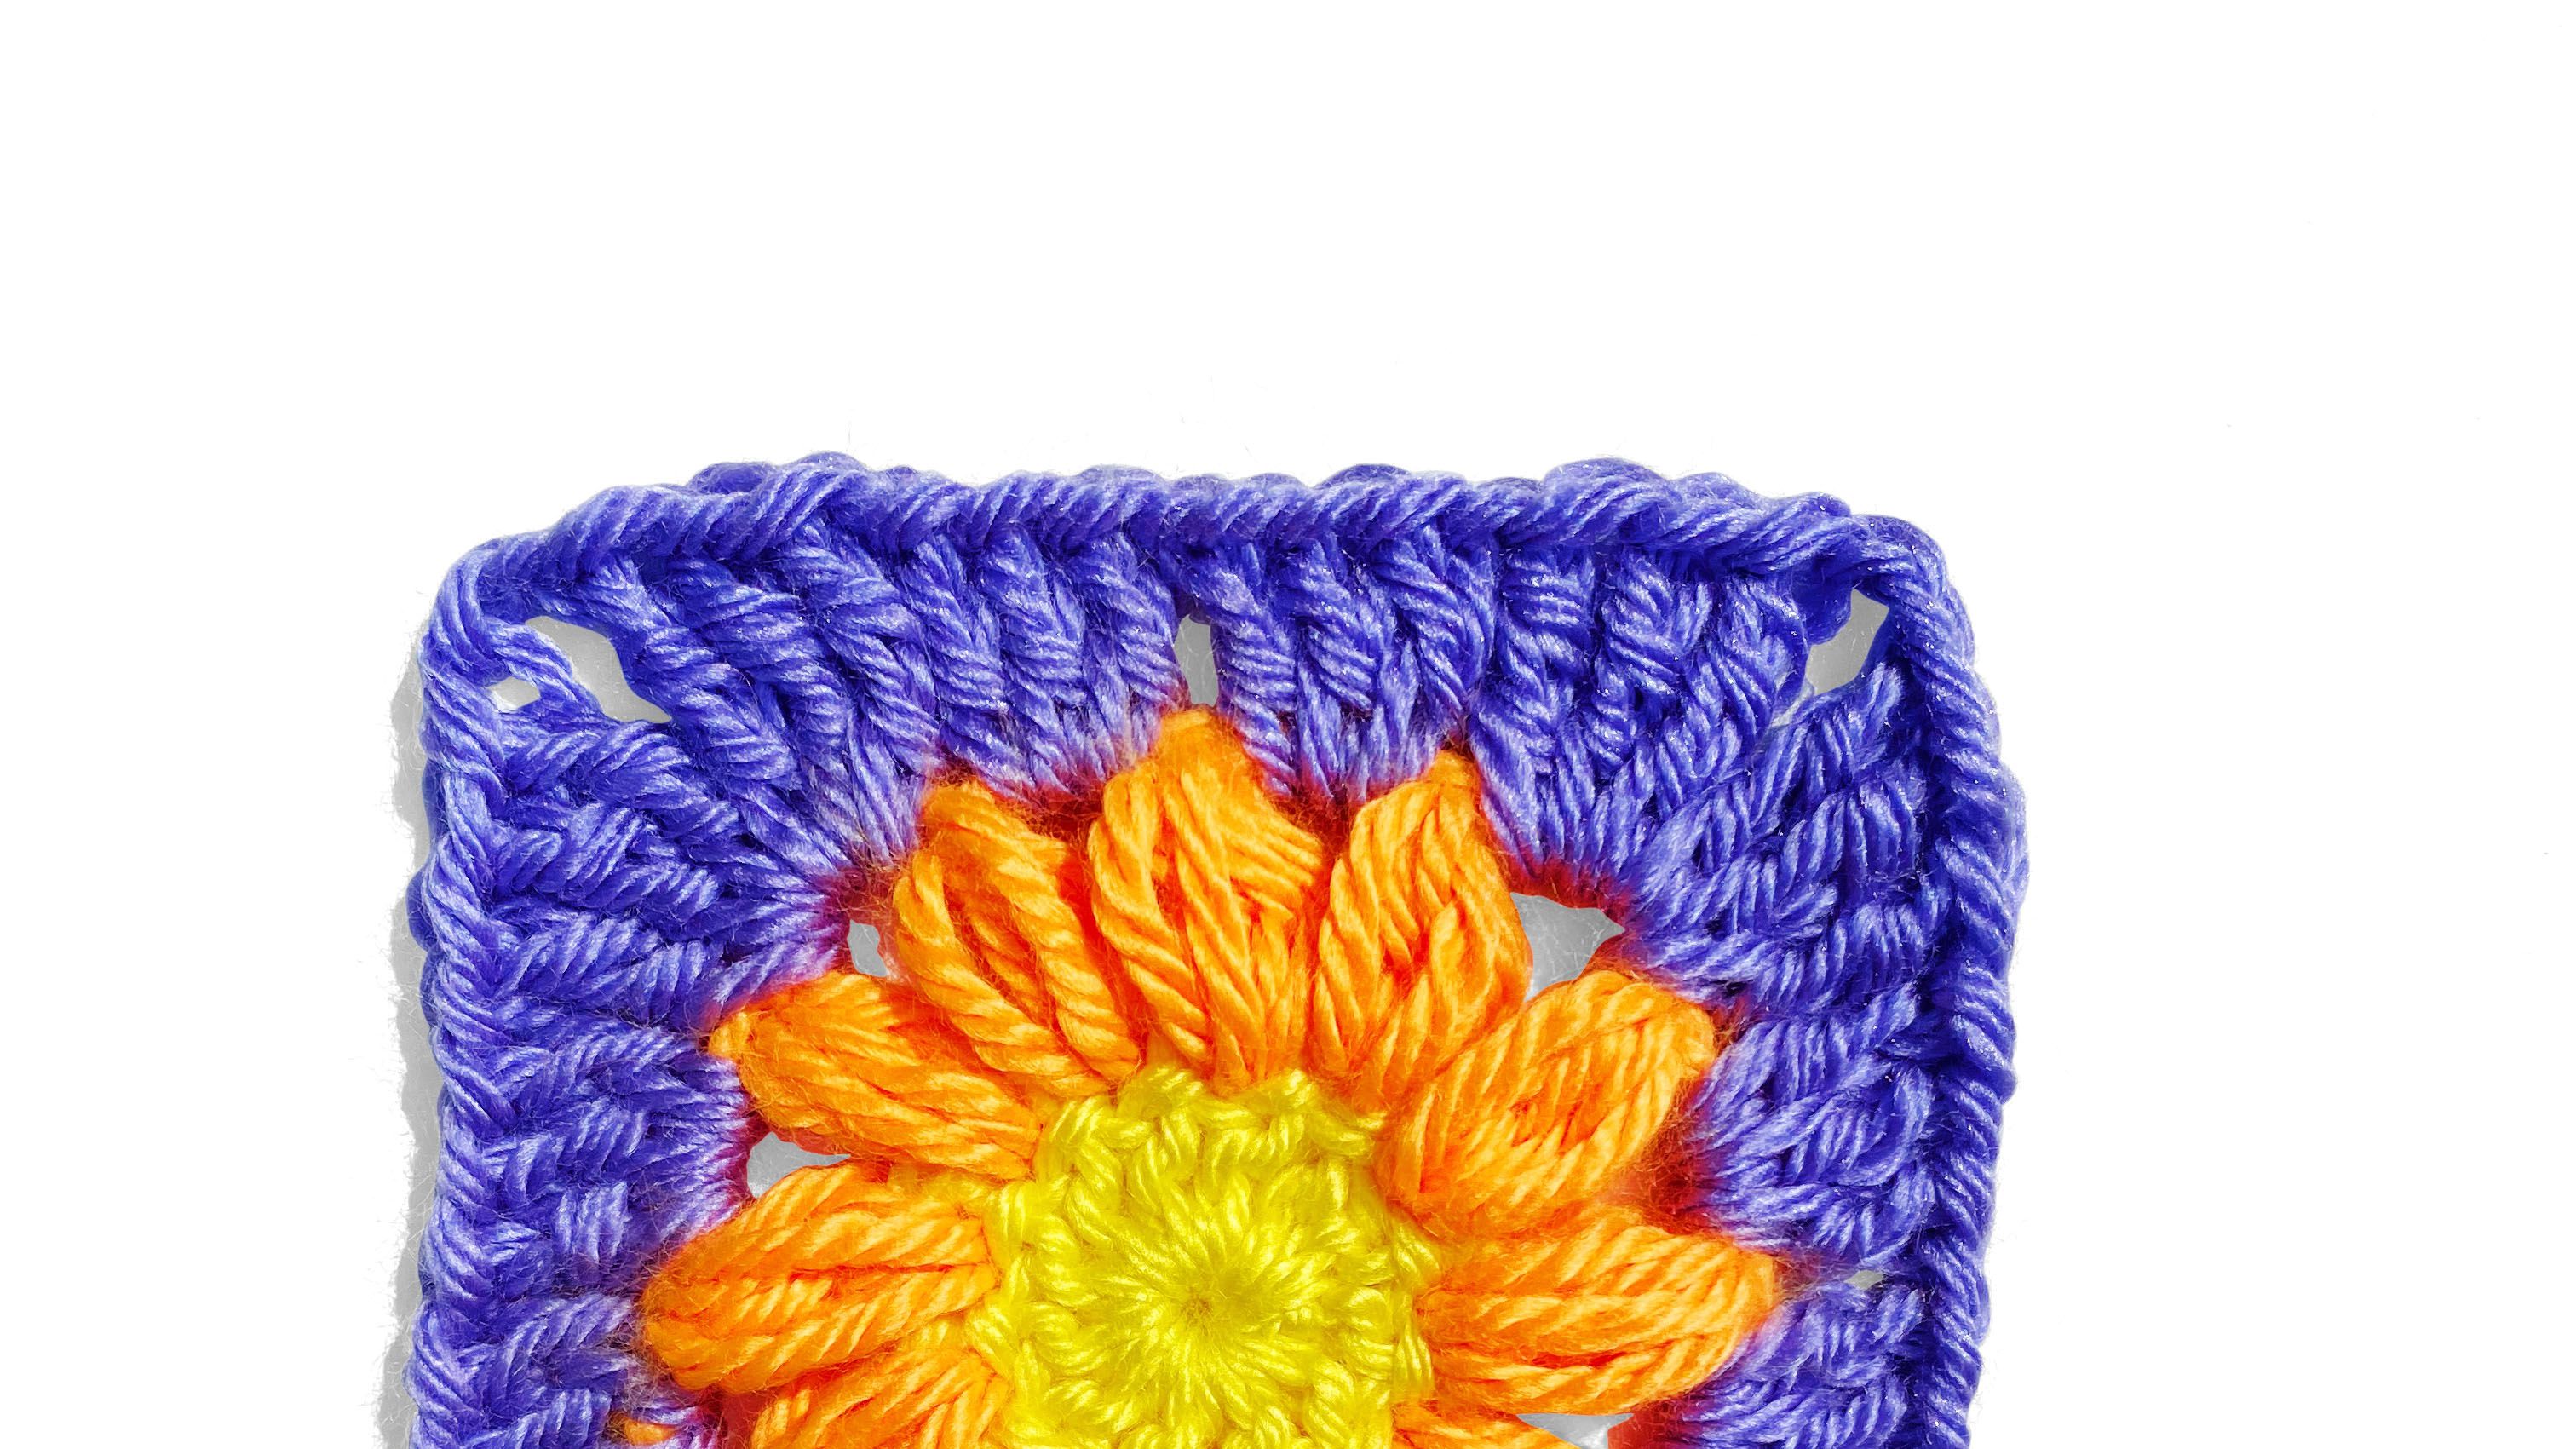 Crocheted Granny Square Needle Book Fall Flower  Granny square crochet,  Granny square, Crochet granny